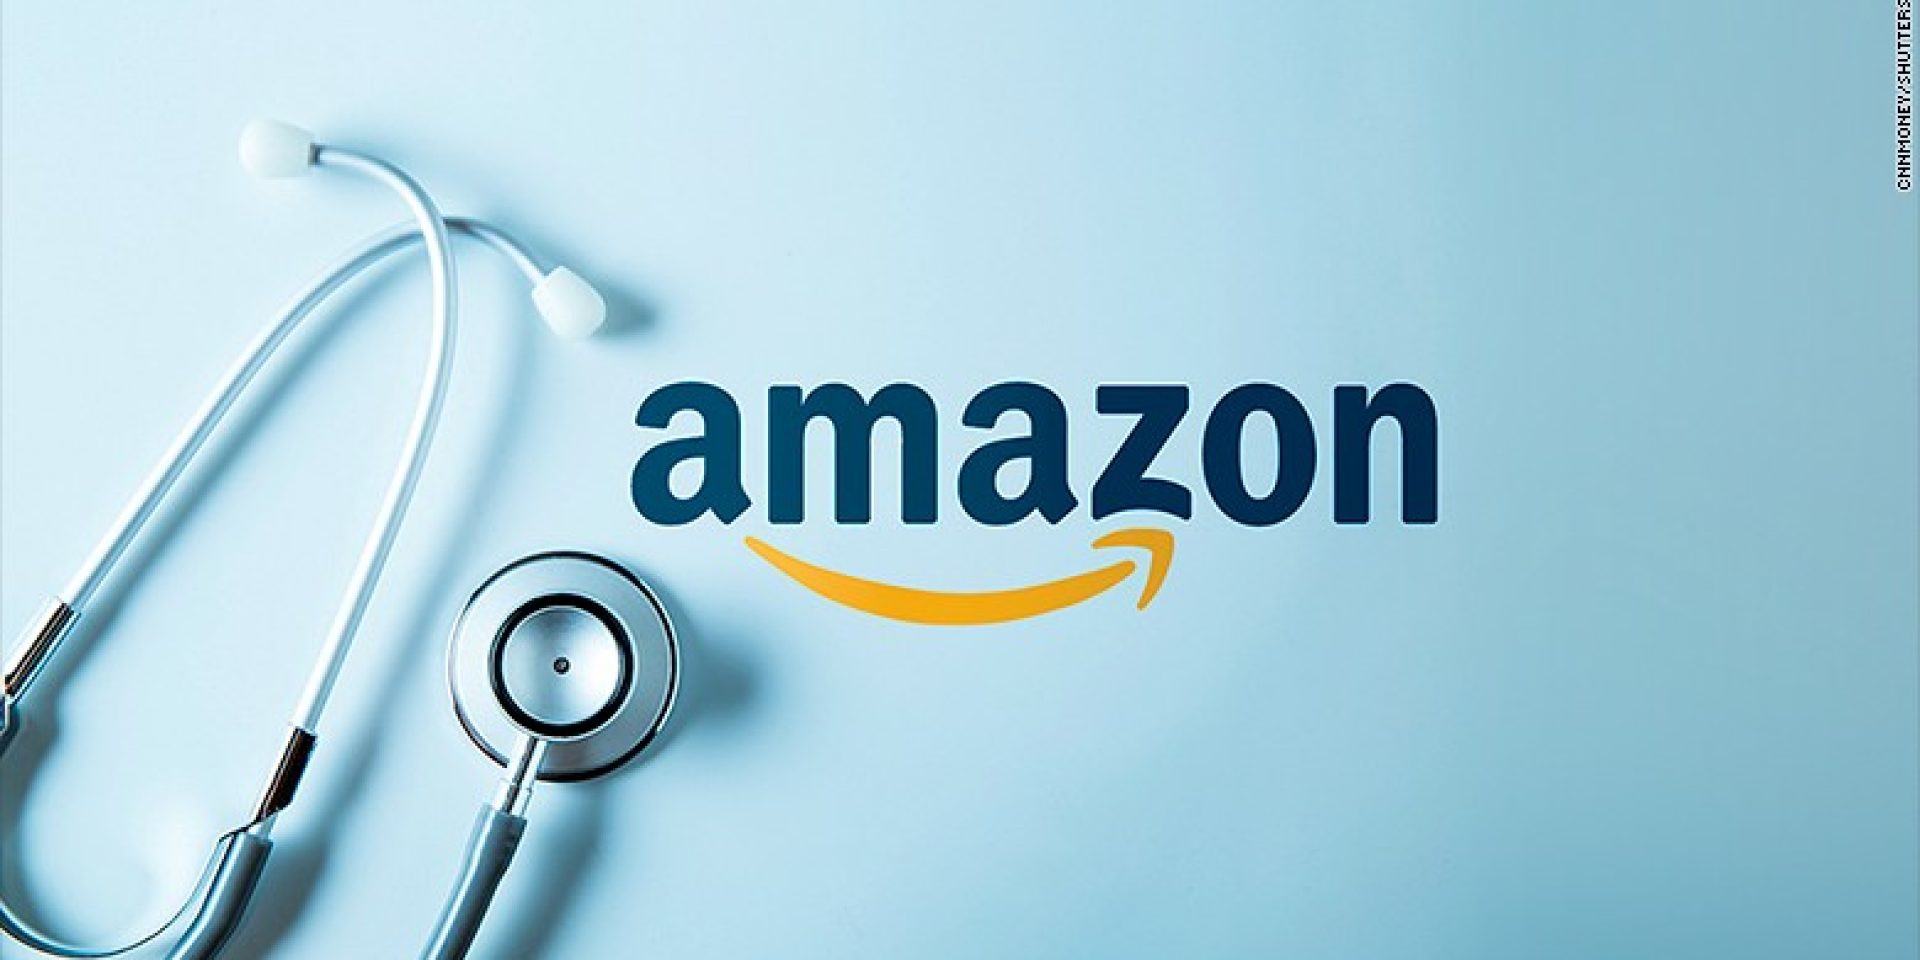 Η Amazon εγκαινιάζει την υπηρεσία υγειονομικής περίθαλψης